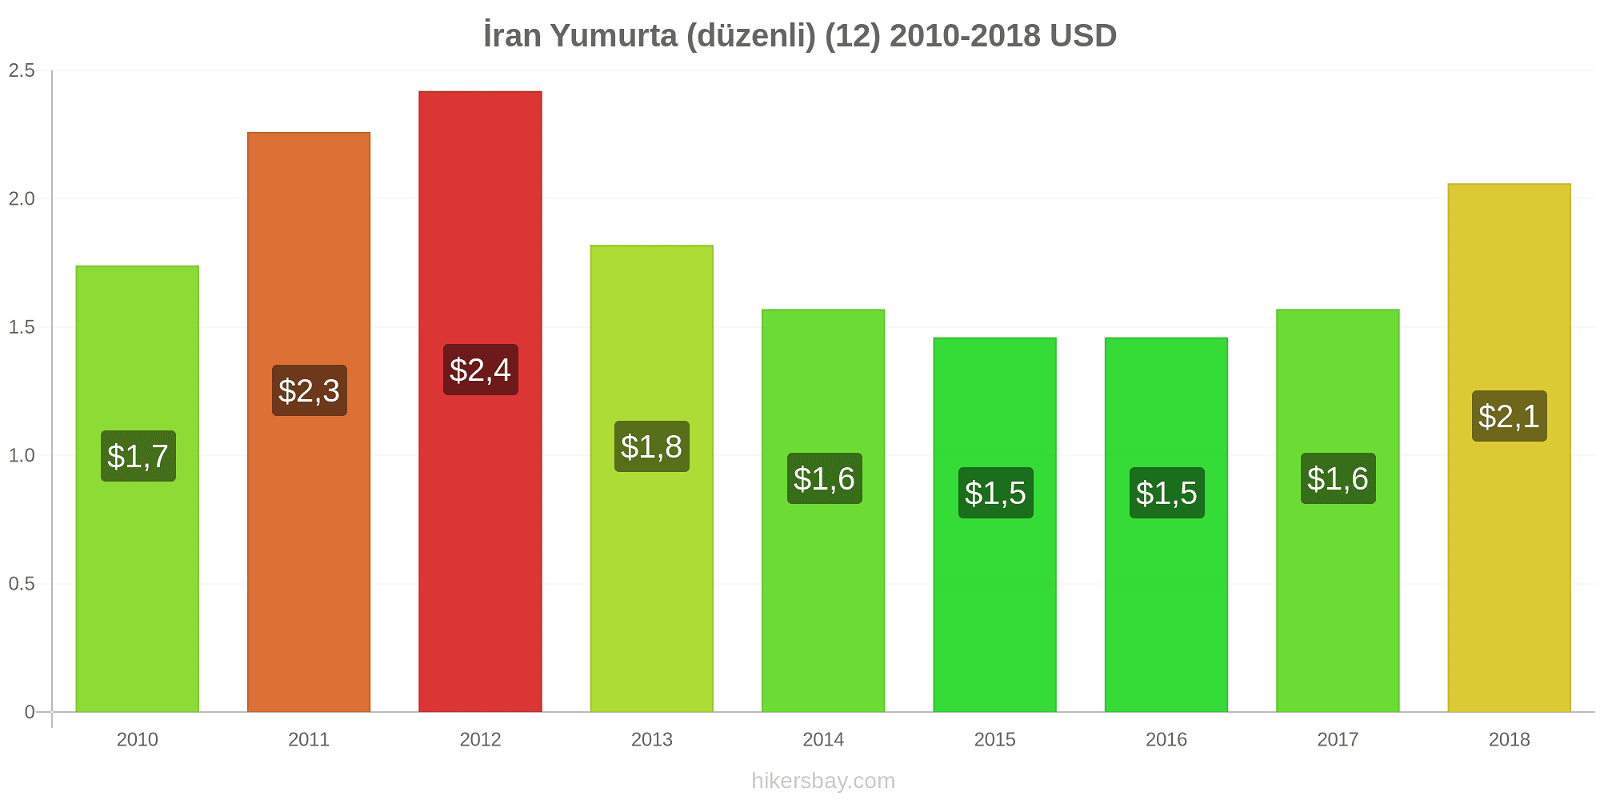 İran fiyat değişiklikleri Yumurta (normal) (12) hikersbay.com